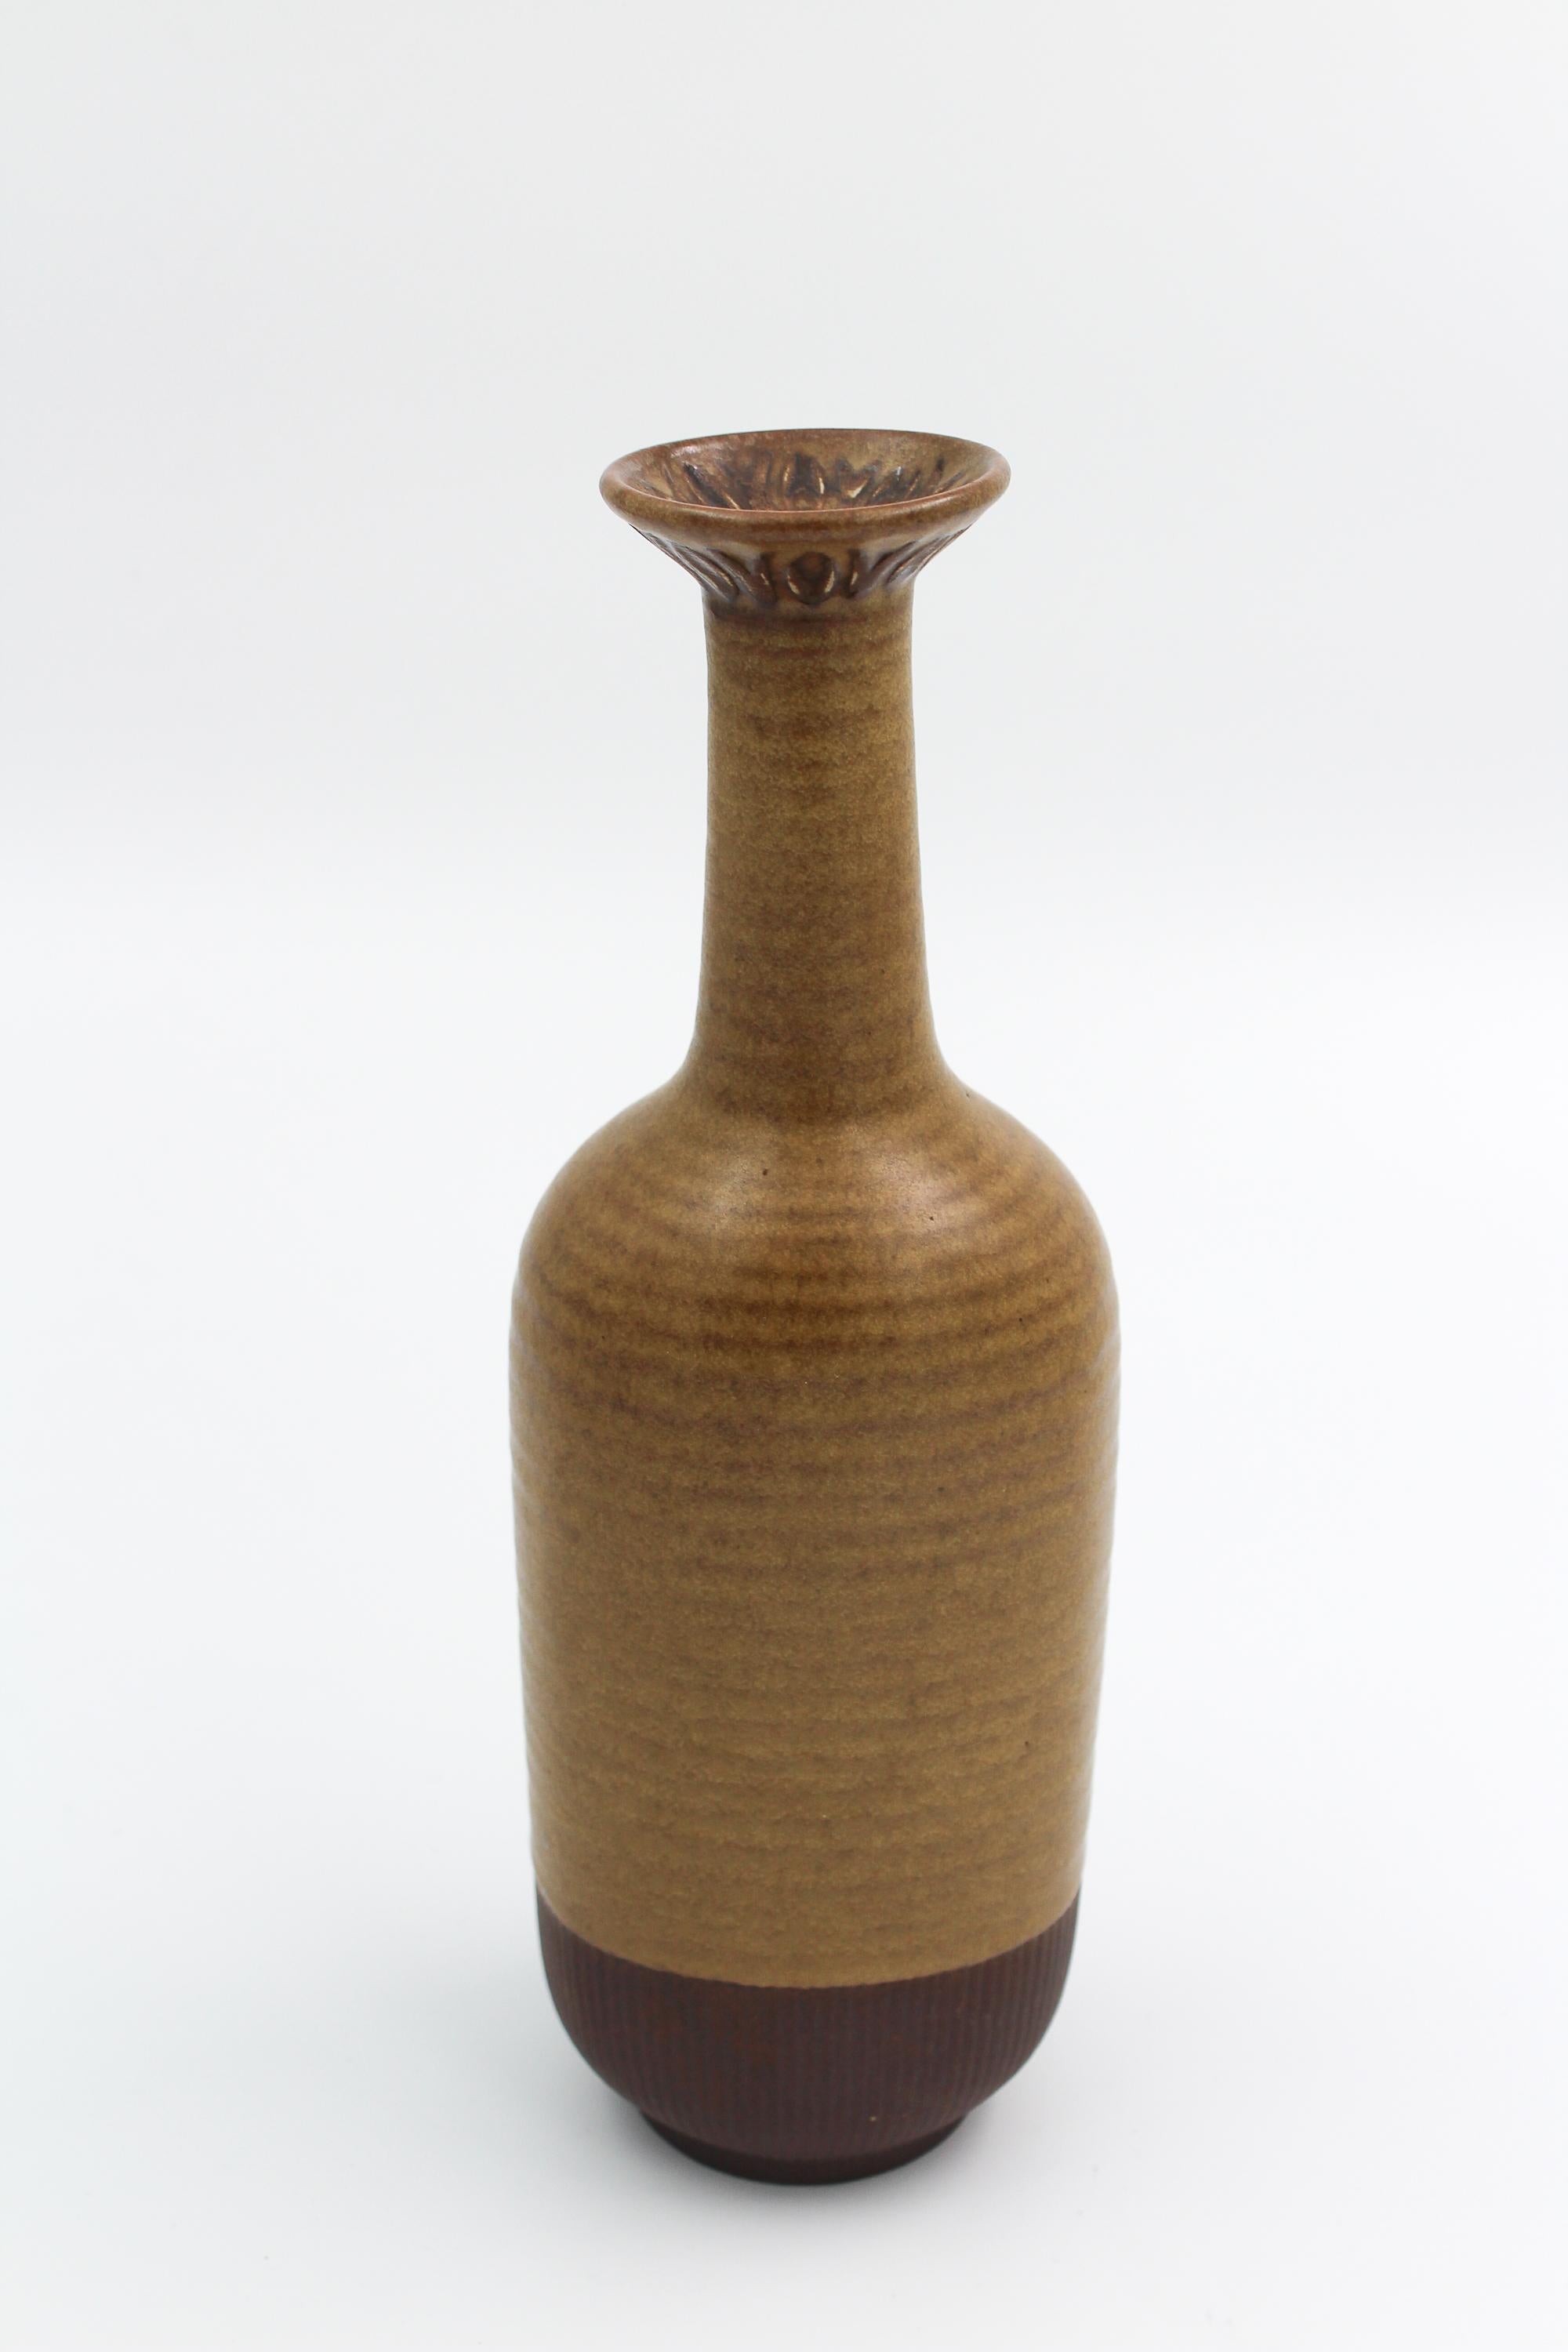 Scandinavian Modern Midcentury Gunnar Nylund Ceramic Vase, 1950s For Sale